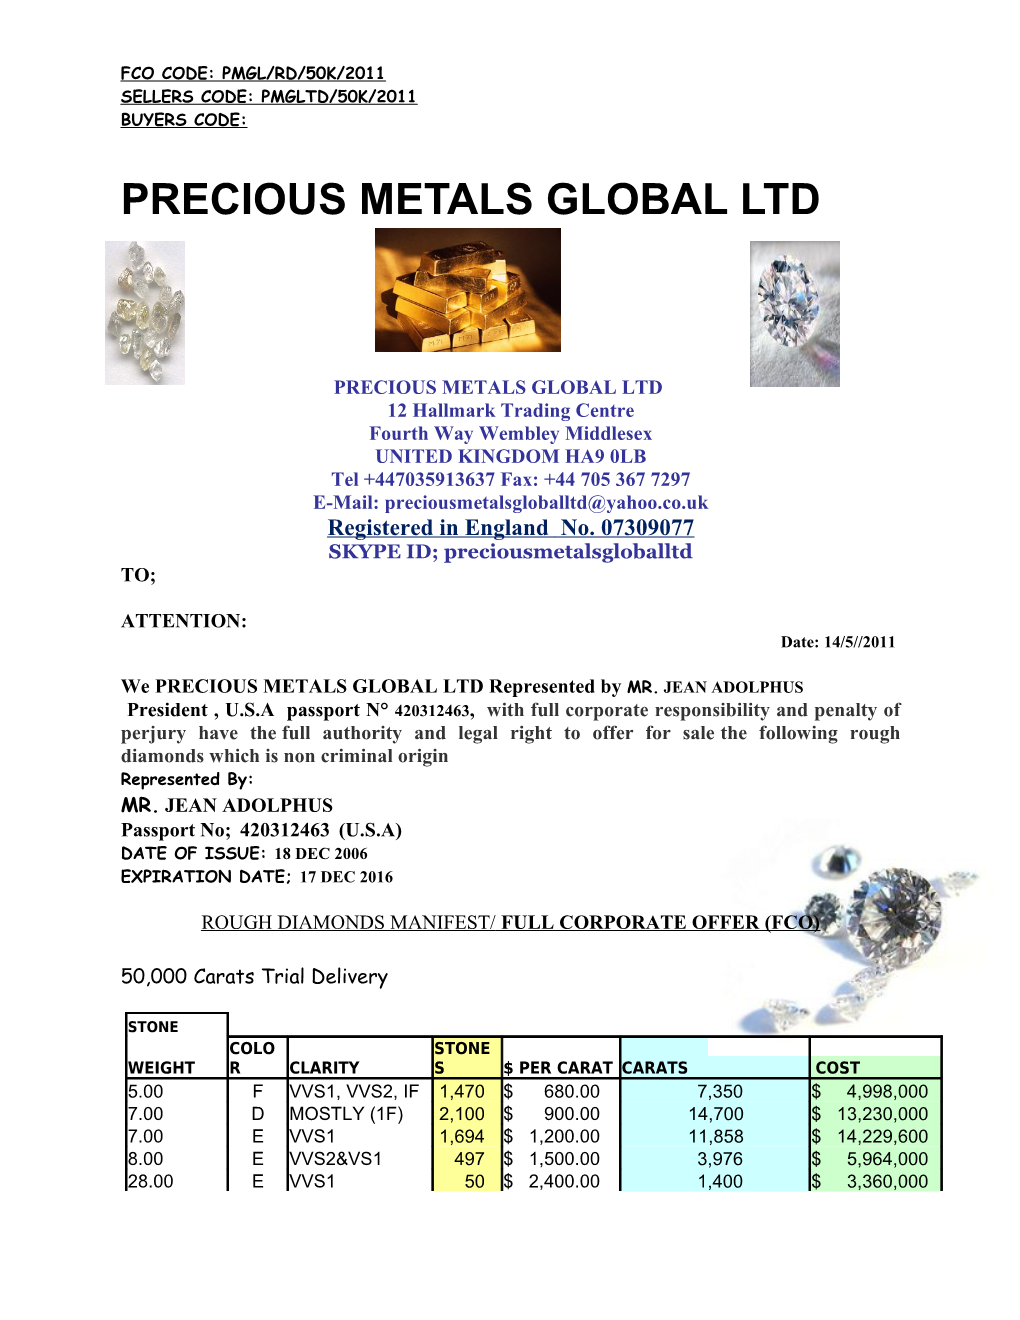 Precious Metals Global Ltd